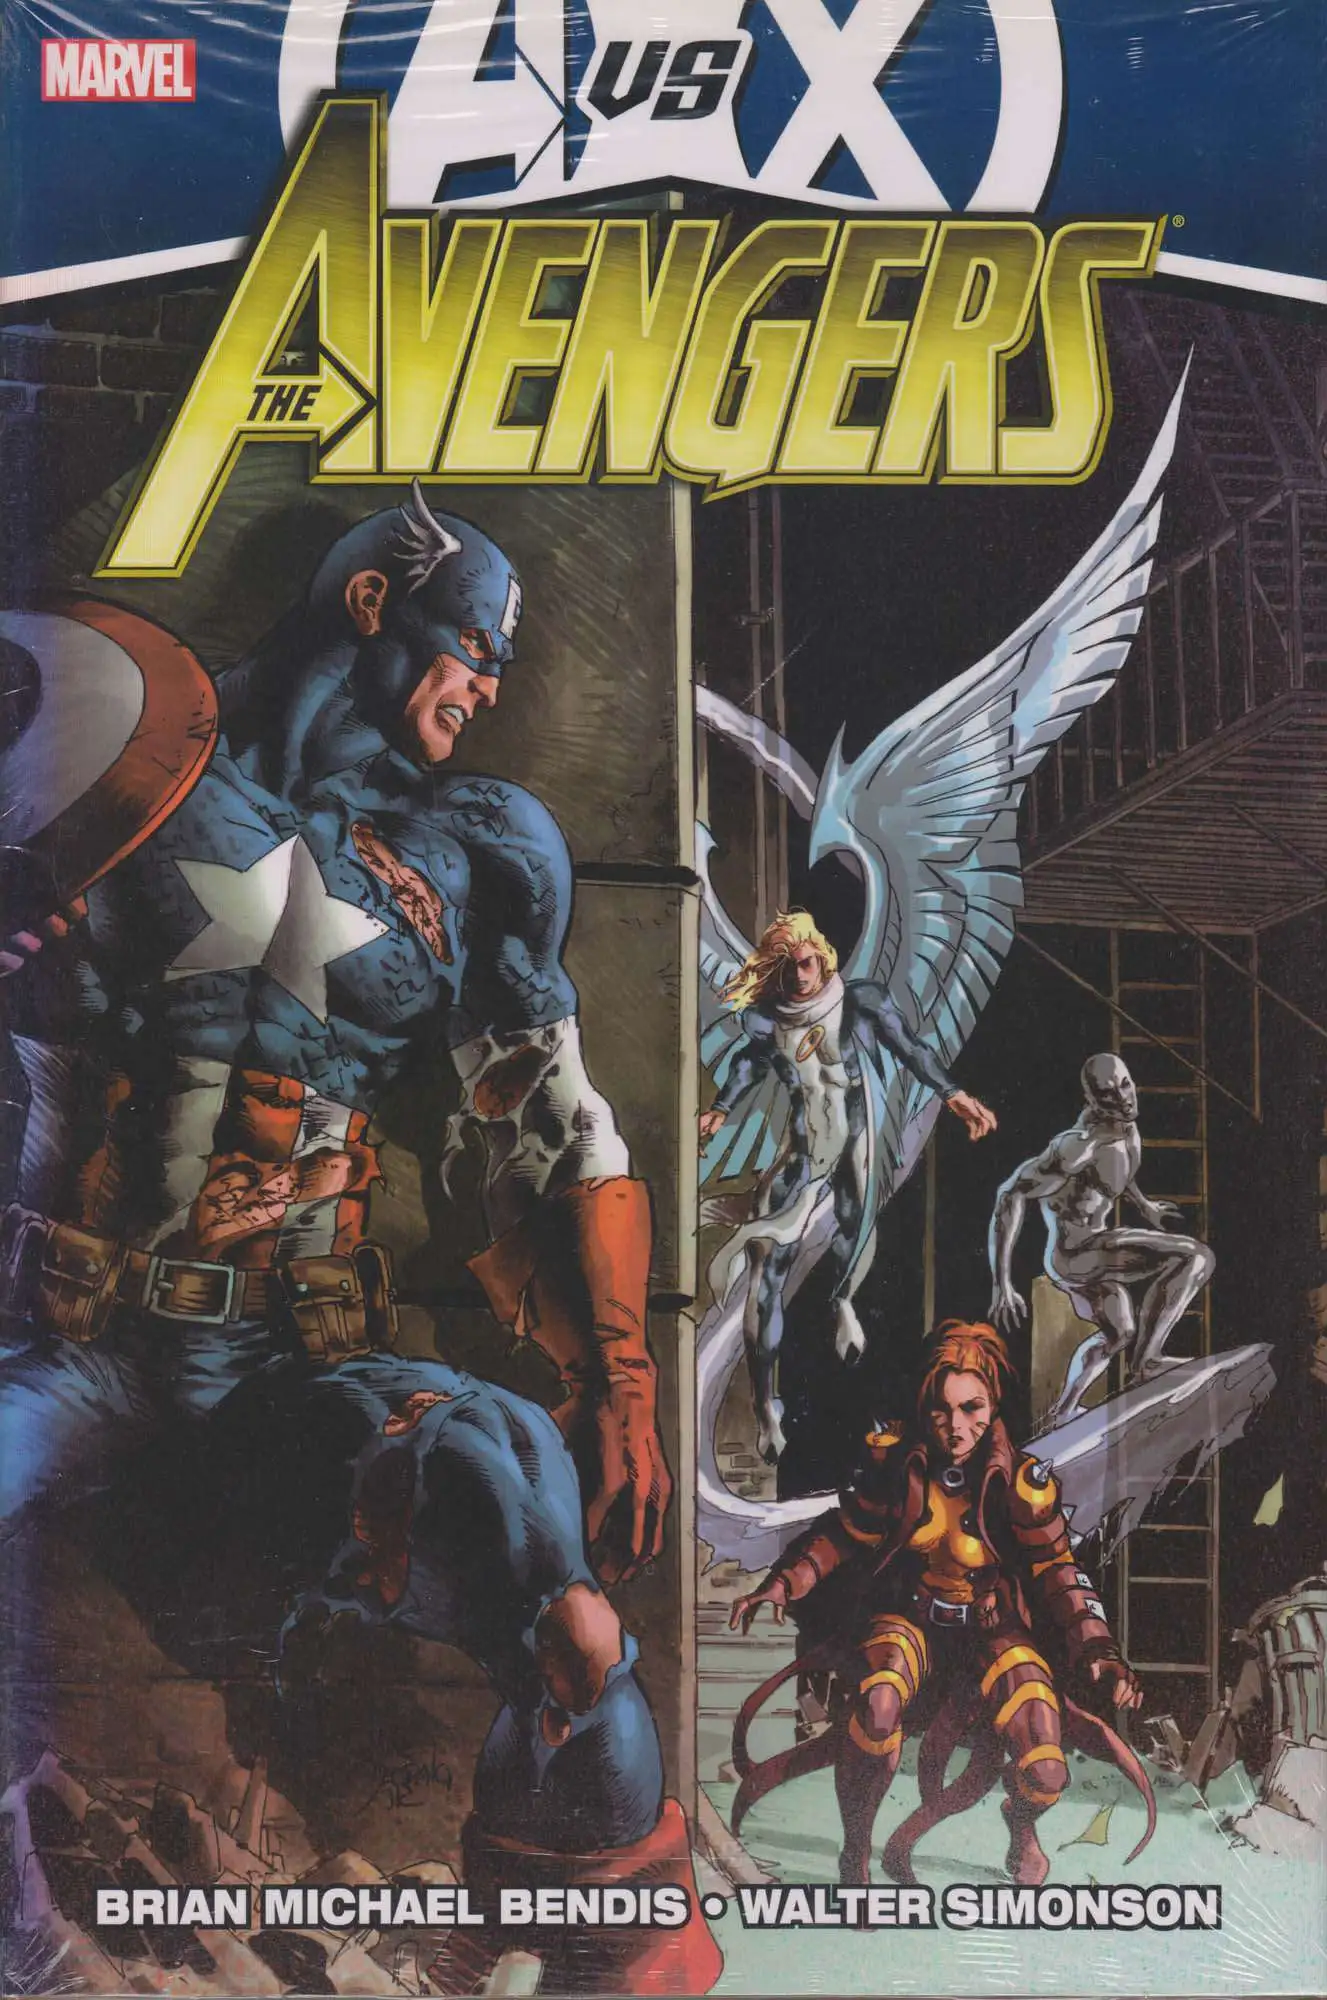 Marvel Avengers Vs X-Men Avengers vs. X-Men Hard Cover Comic Book #4 [Sun Damage on Spine]